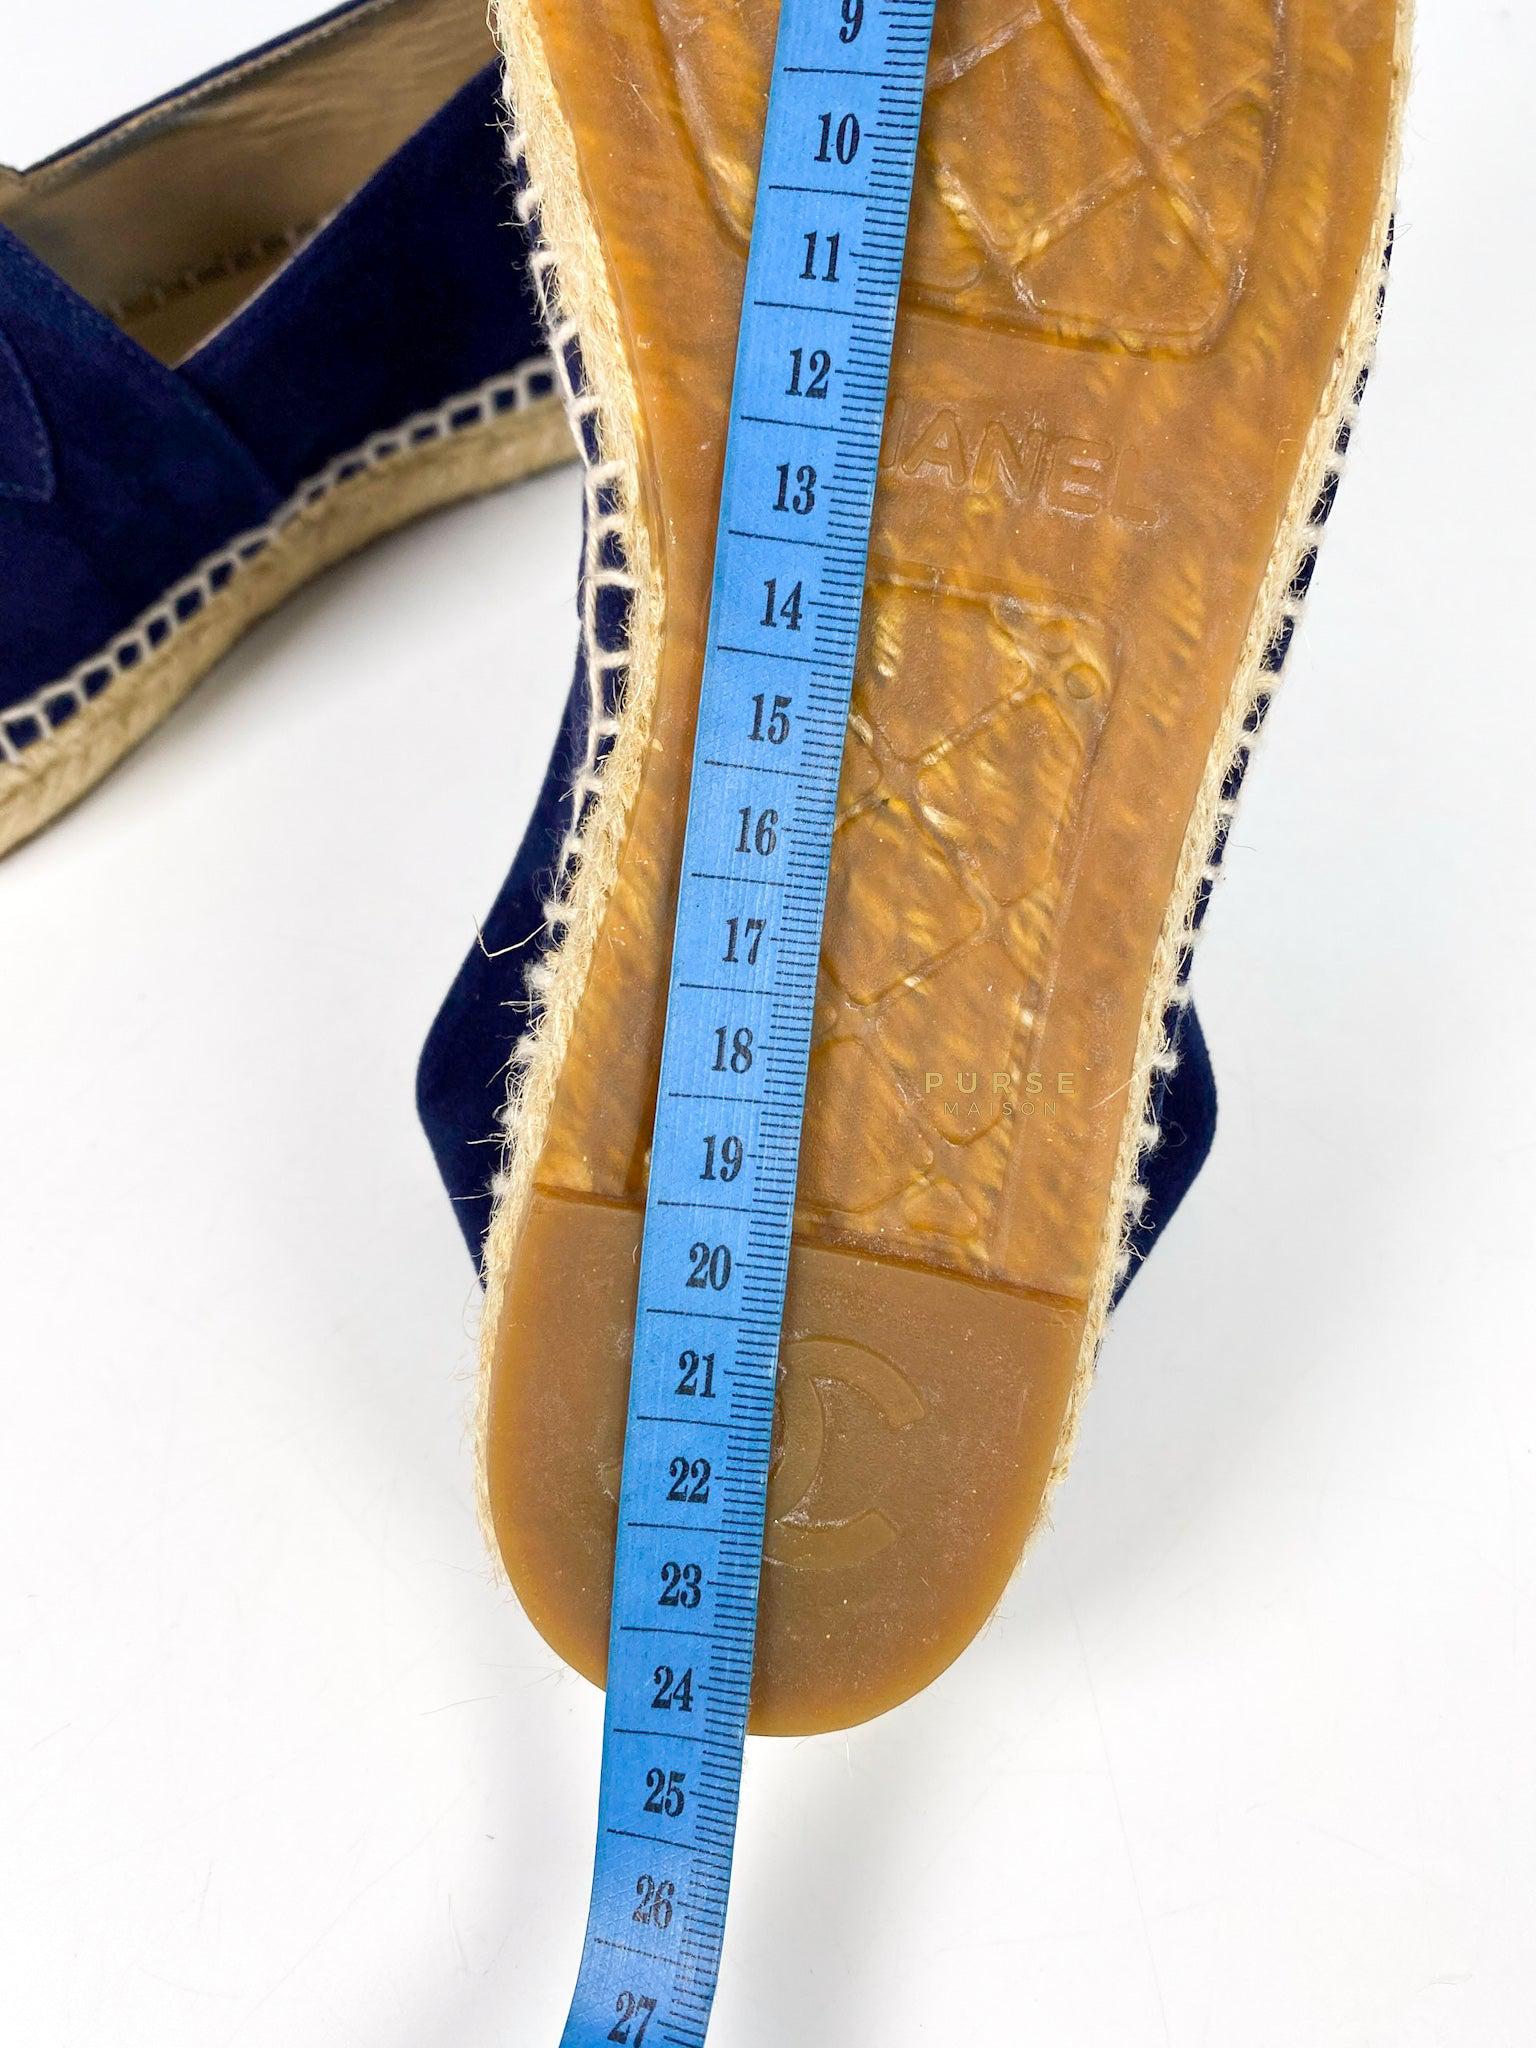 Chanel Espadrilles Suede Navy Blue Size 36 EU (22.5cm)